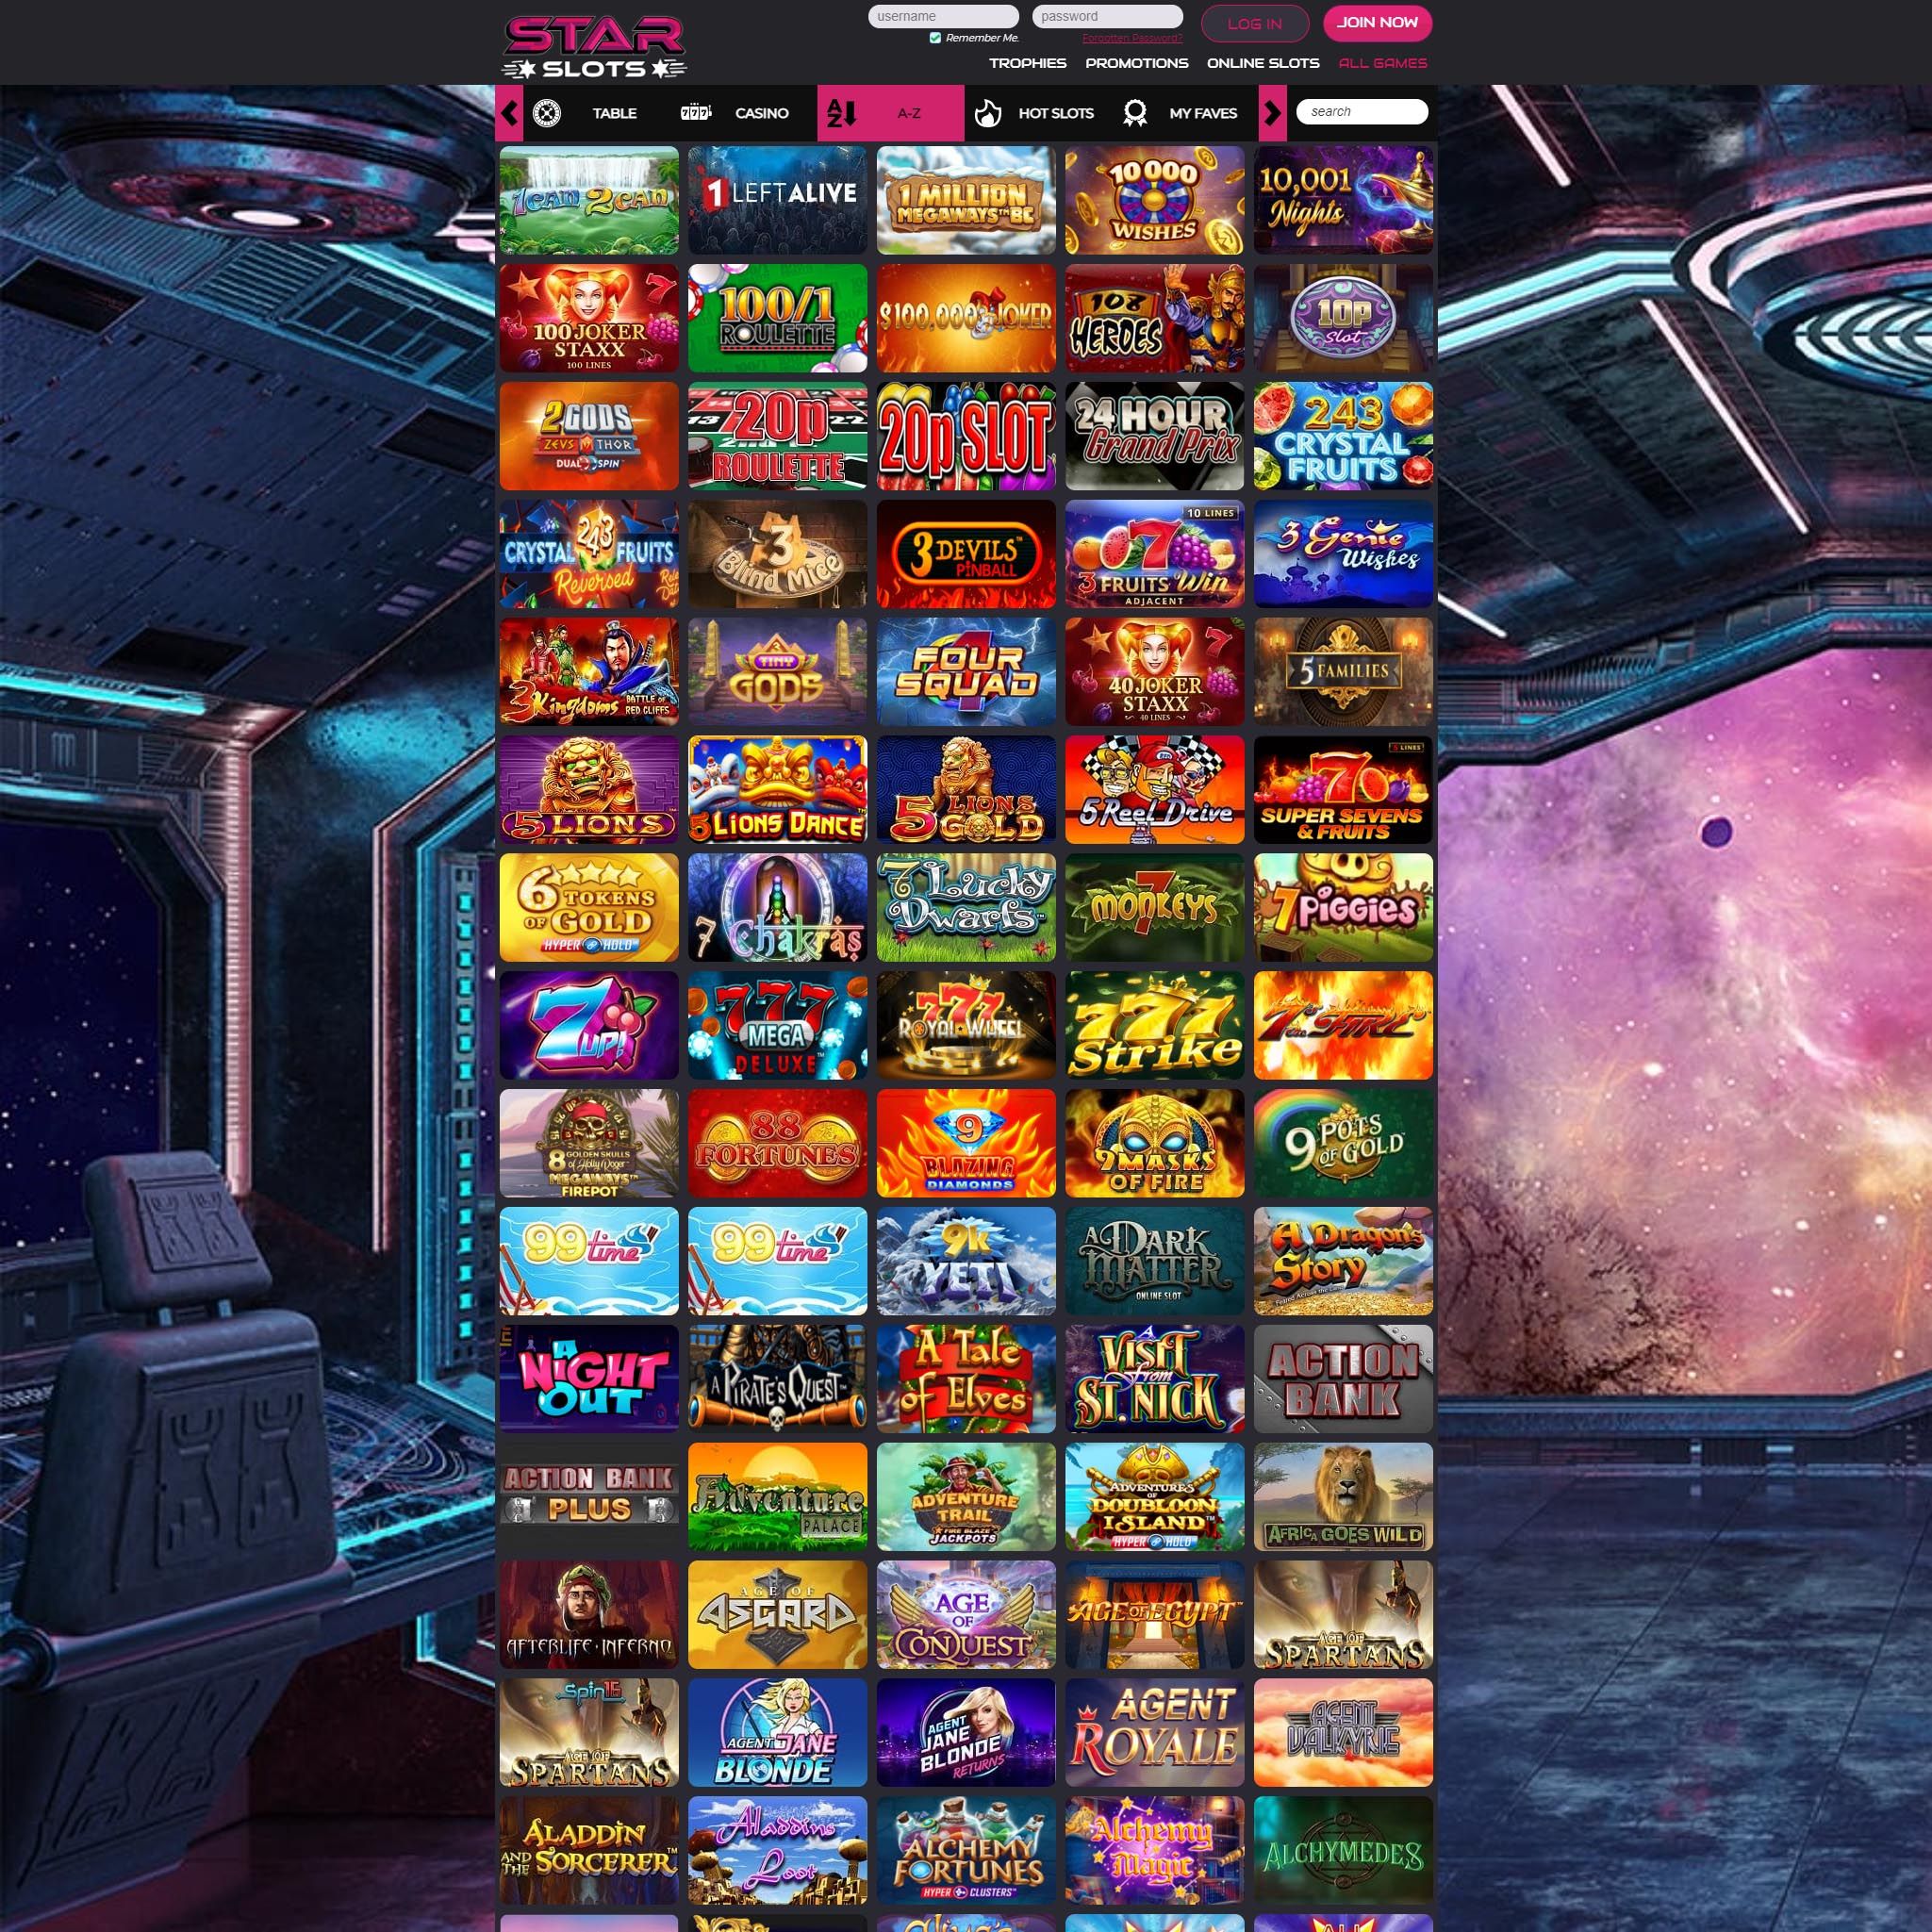 Star Slots full games catalogue